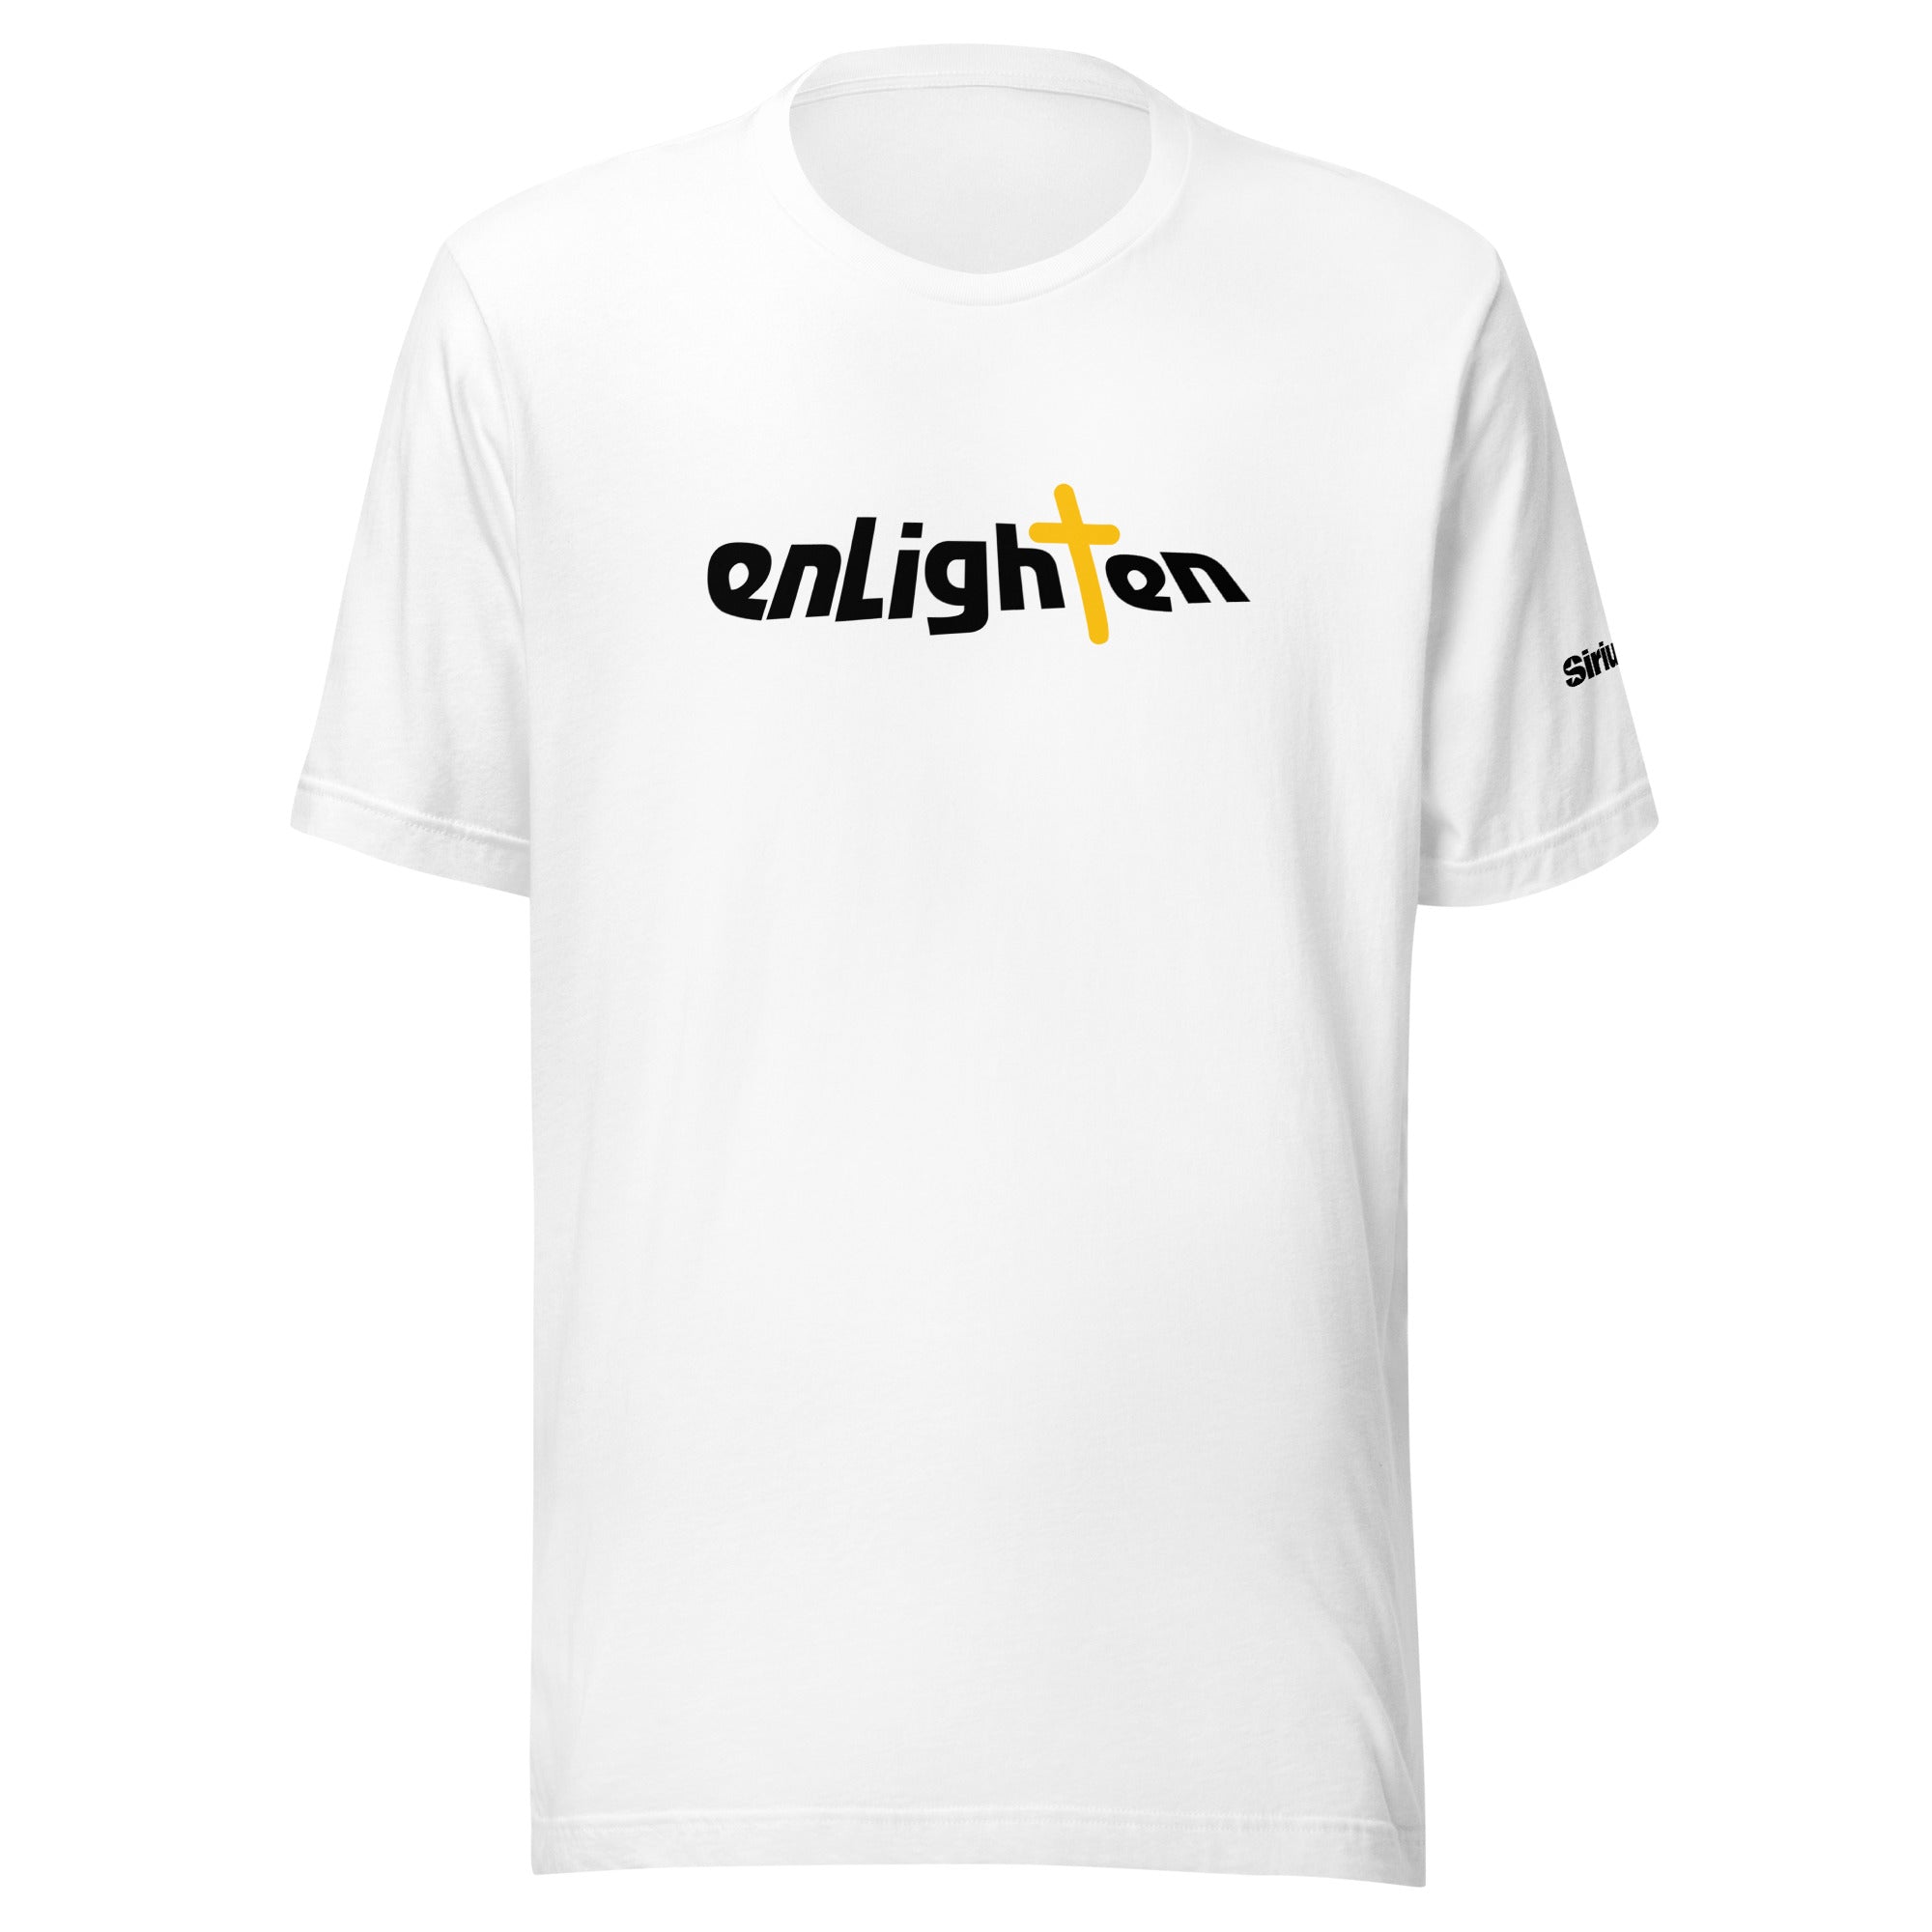 Enlighten: T-shirt (White)